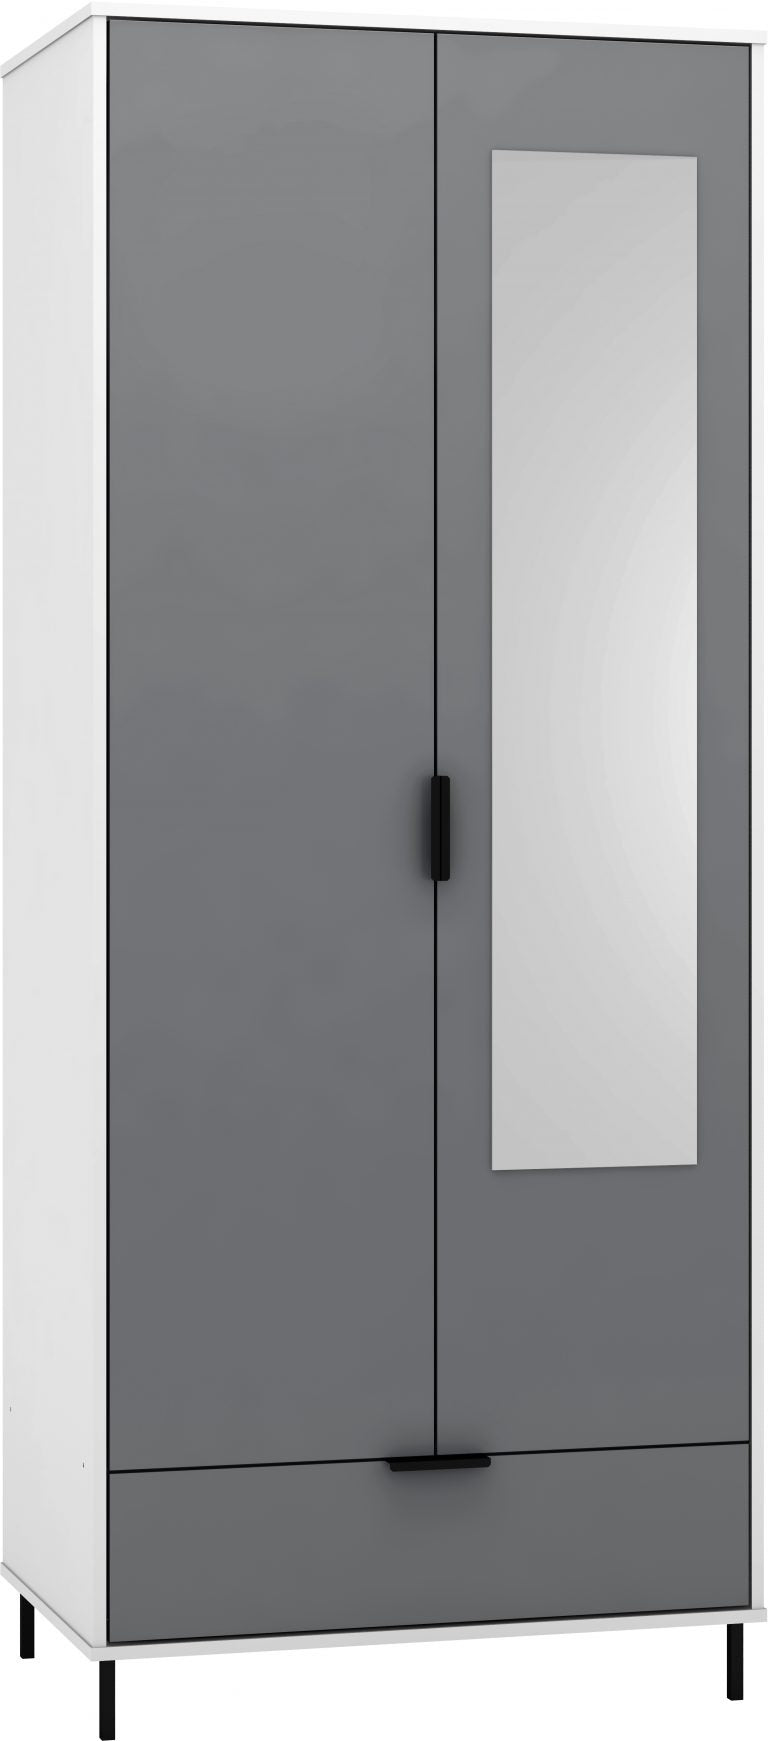 Madrid 2 Door 1 Drawer Mirrored Wardrobe - Grey/White Gloss